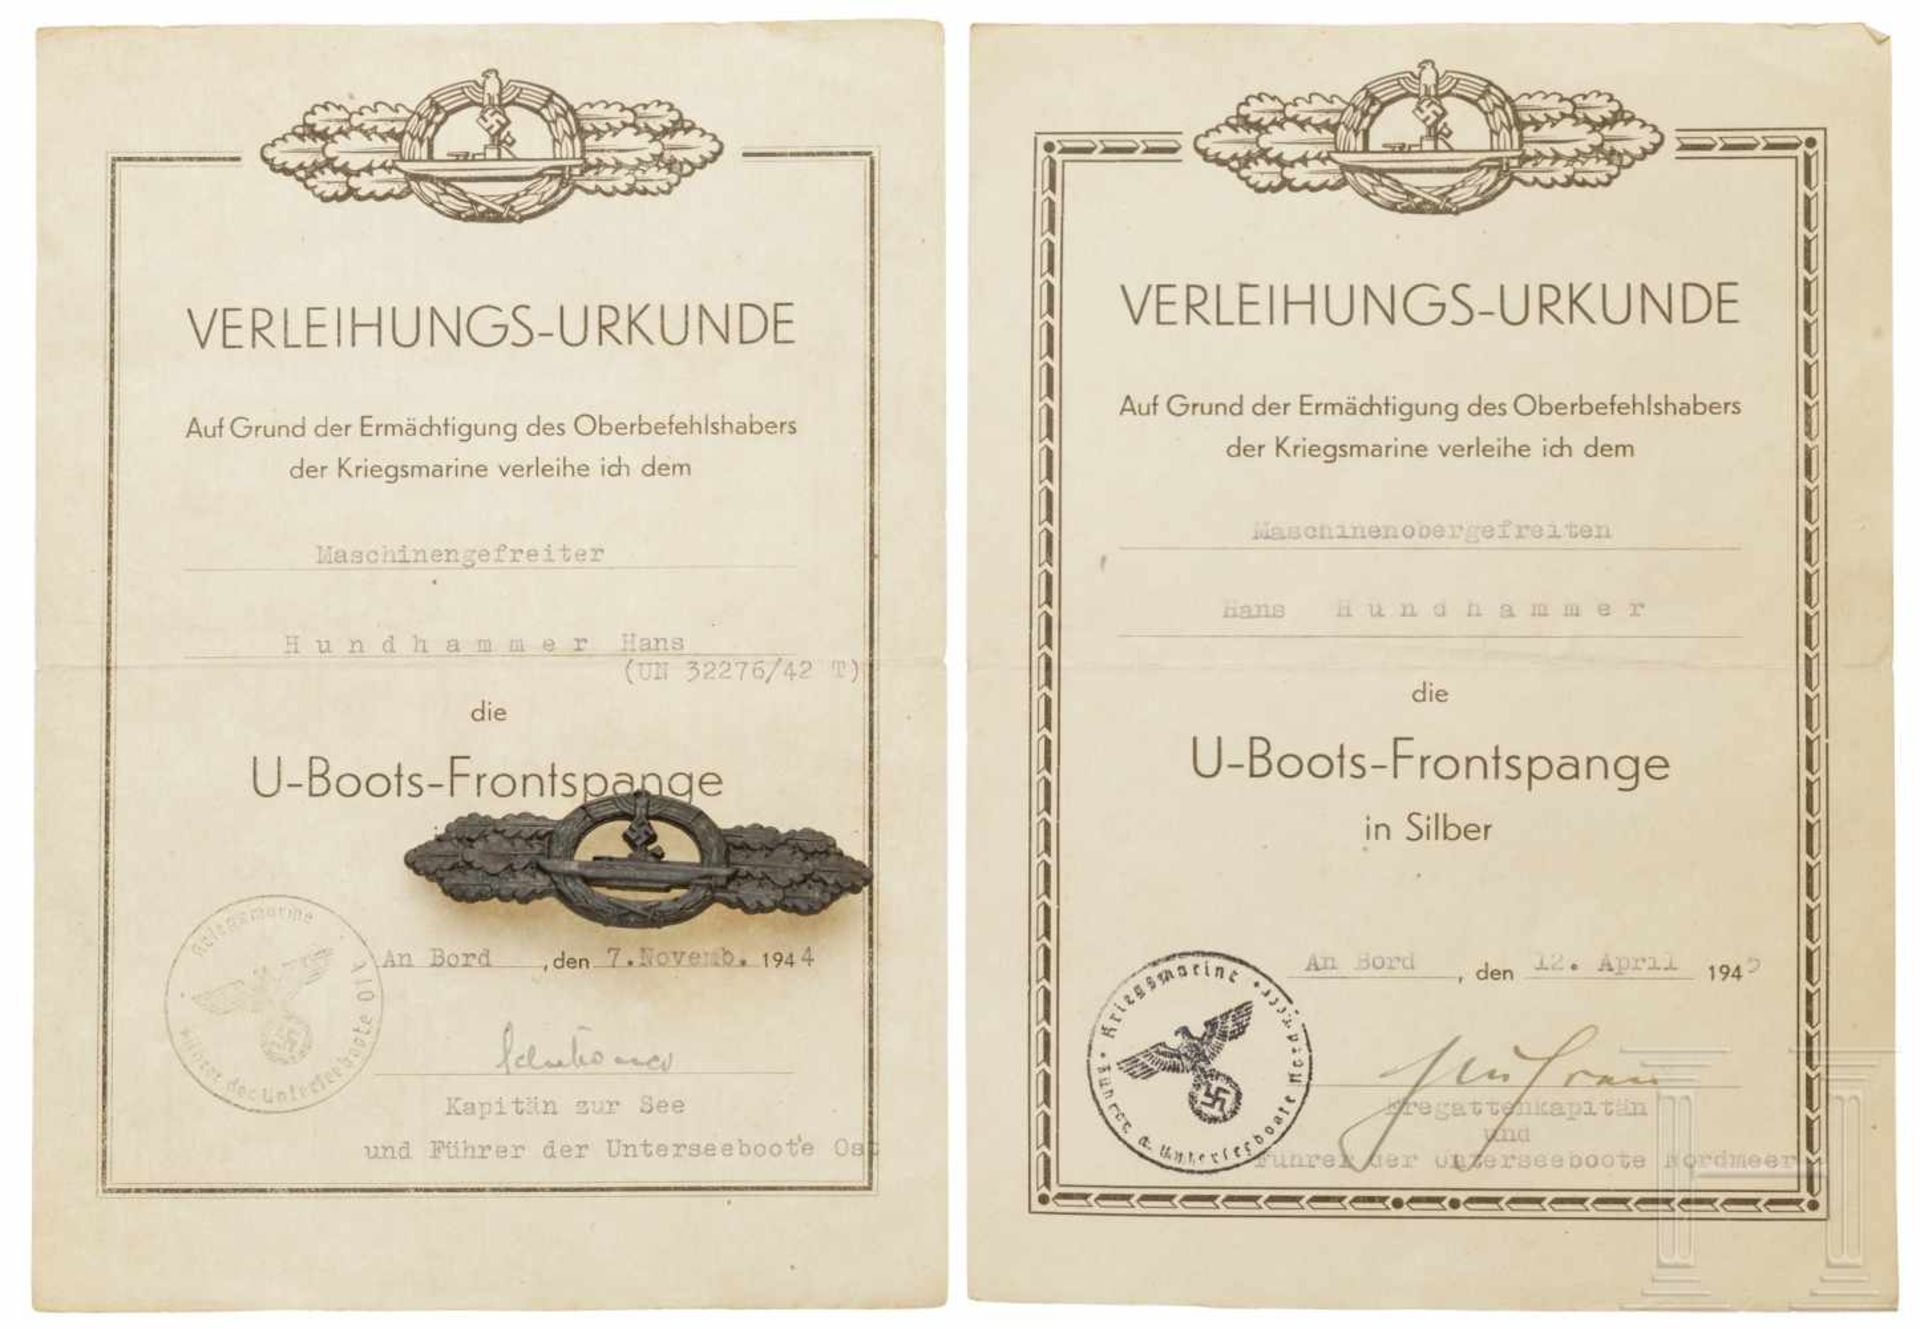 Maschinenobergefreiter Hundshammer - U-Boots-Frontspange in Bronze und UrkundenSchmuckurkunde zur